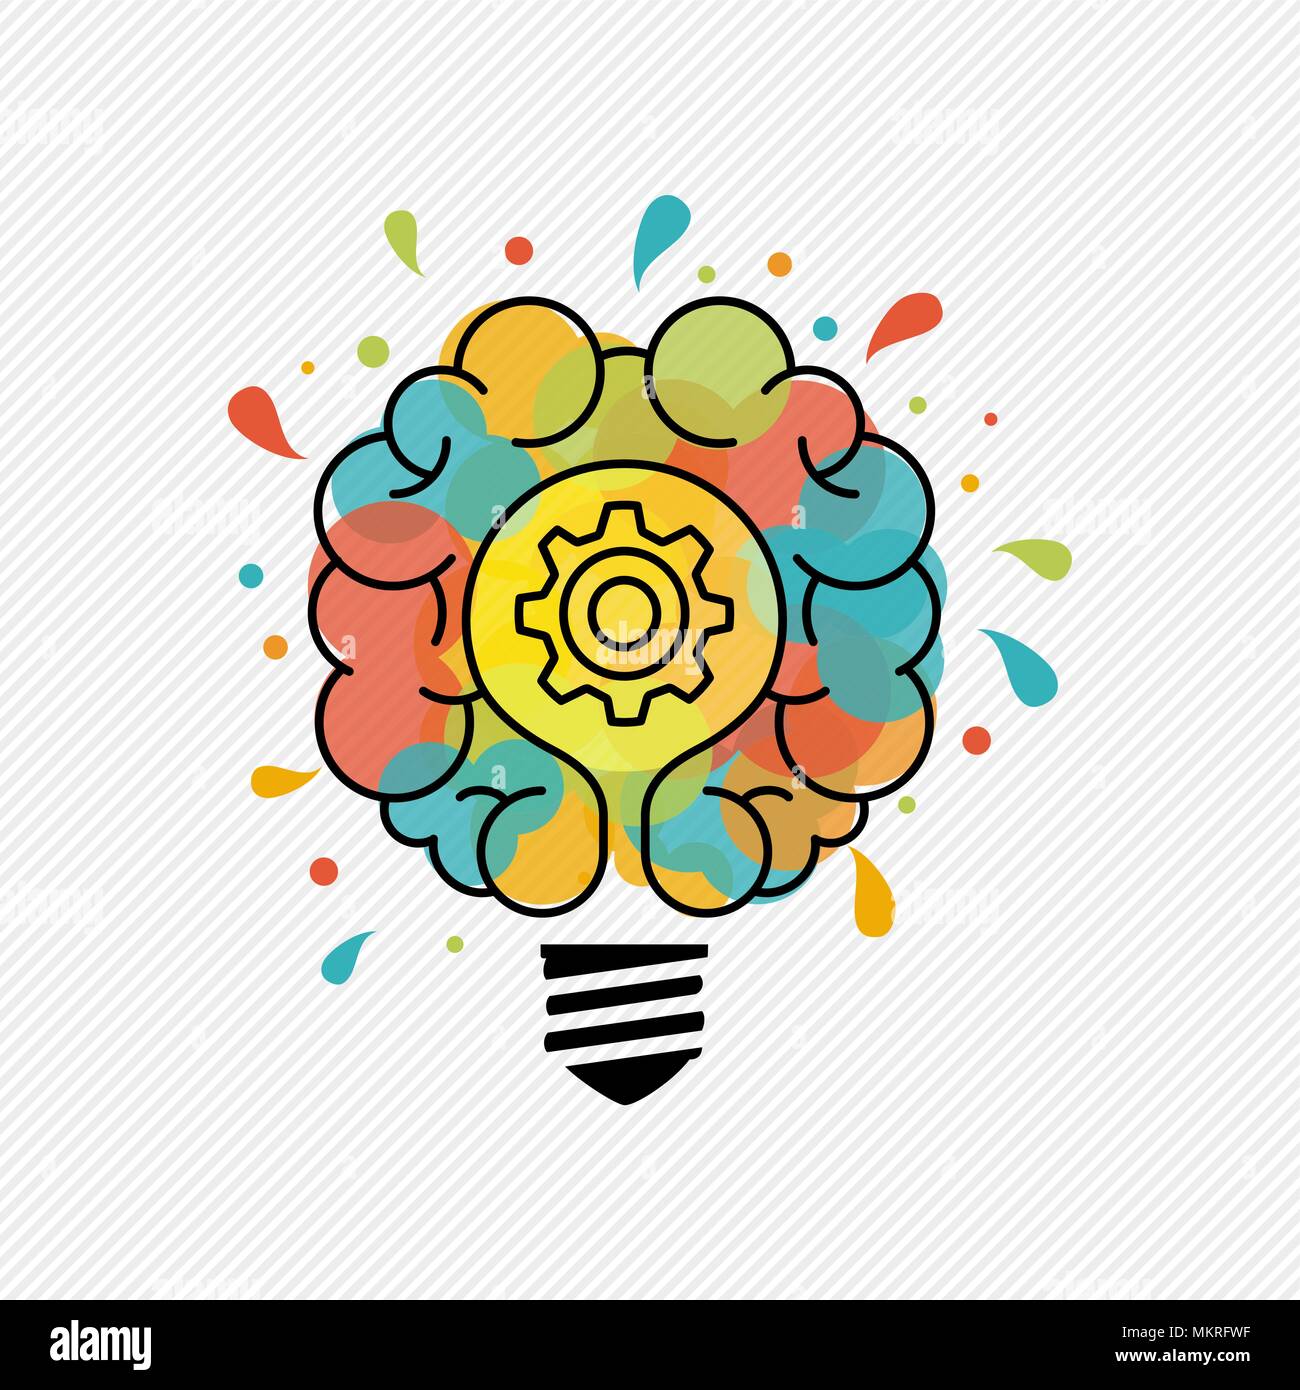 Nuove idee creative concetto illustrazione della lampadina elettrica con lampada e cervello umano in una colorata arte splash e contorno stile. EPS10 vettore. Illustrazione Vettoriale